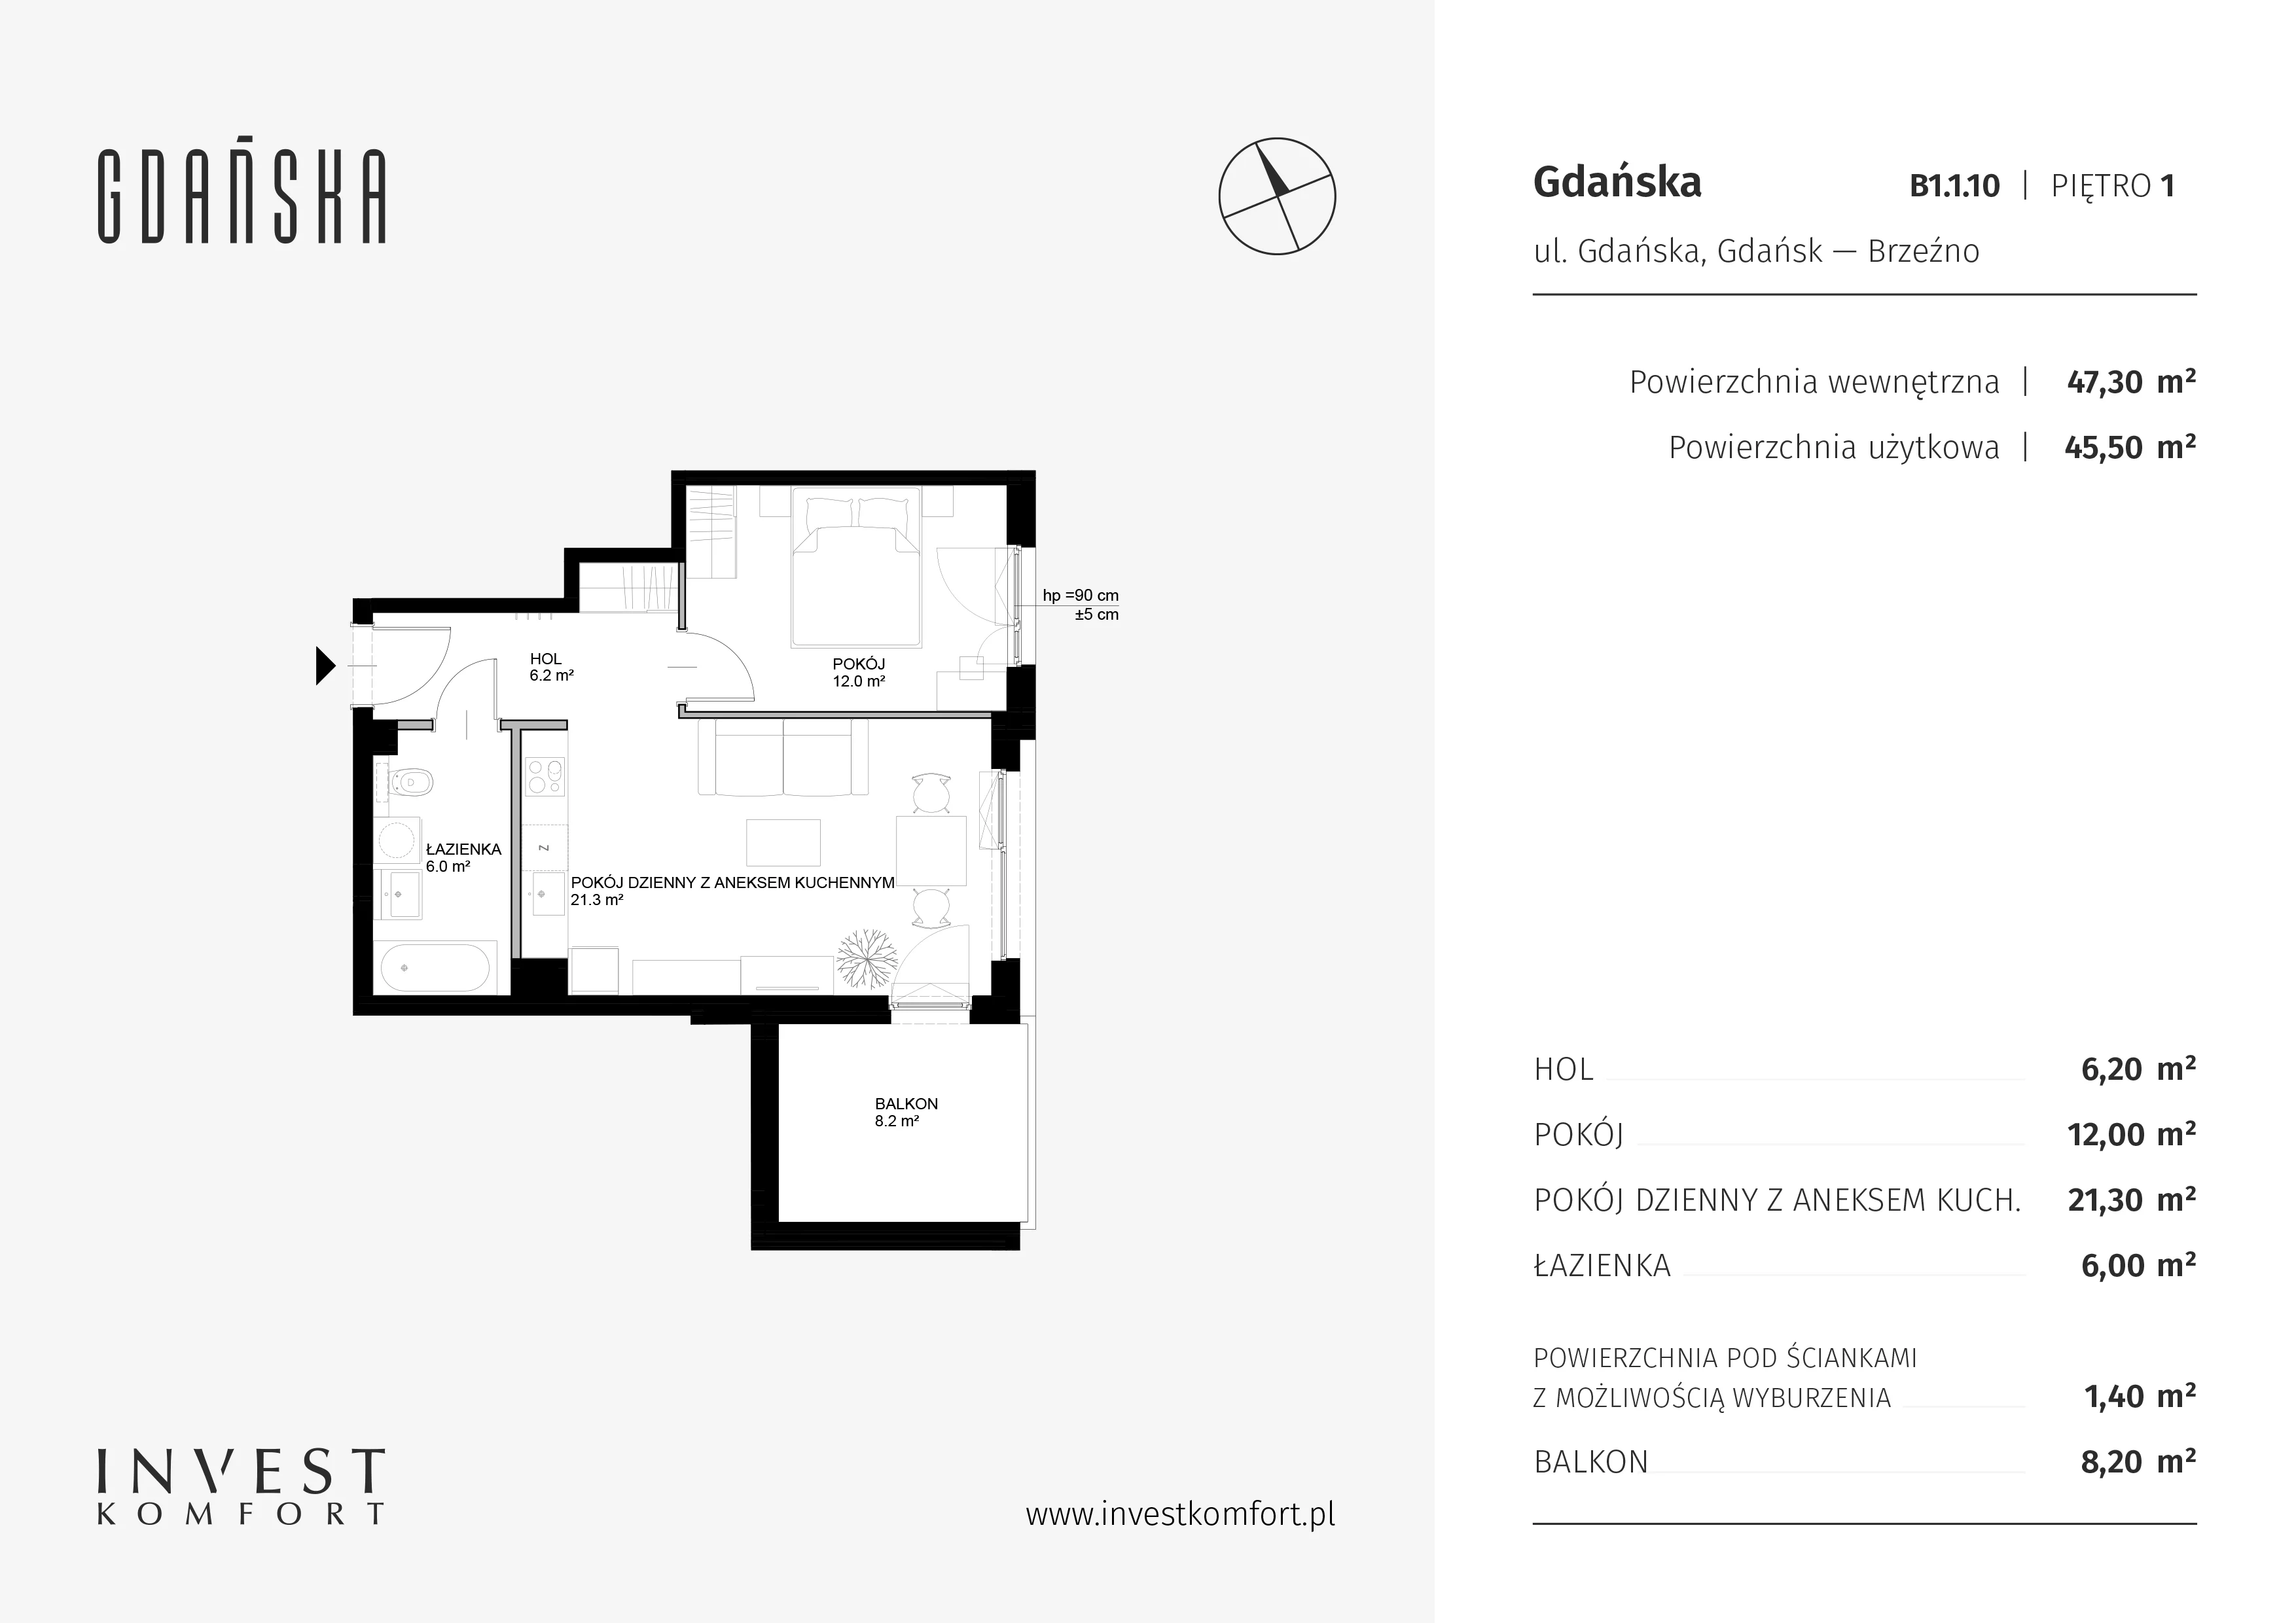 Mieszkanie 47,30 m², piętro 1, oferta nr B1.1.10, Gdańska, Gdańsk, Brzeźno, ul. Gdańska